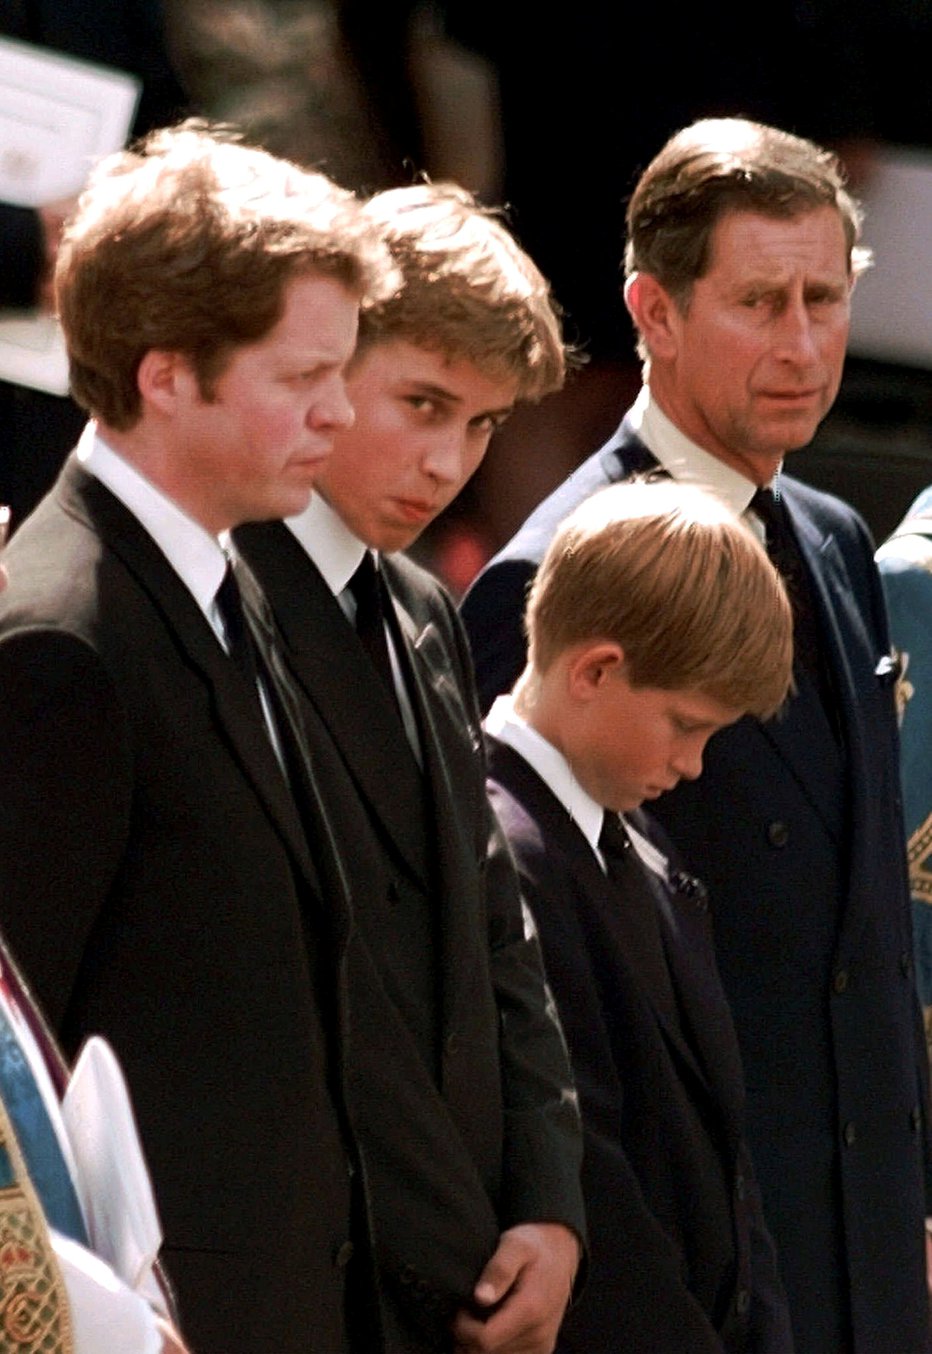 Fotografija: Princs Harry in William na materinem pogrebu leta 1997. FOTO: Reuters